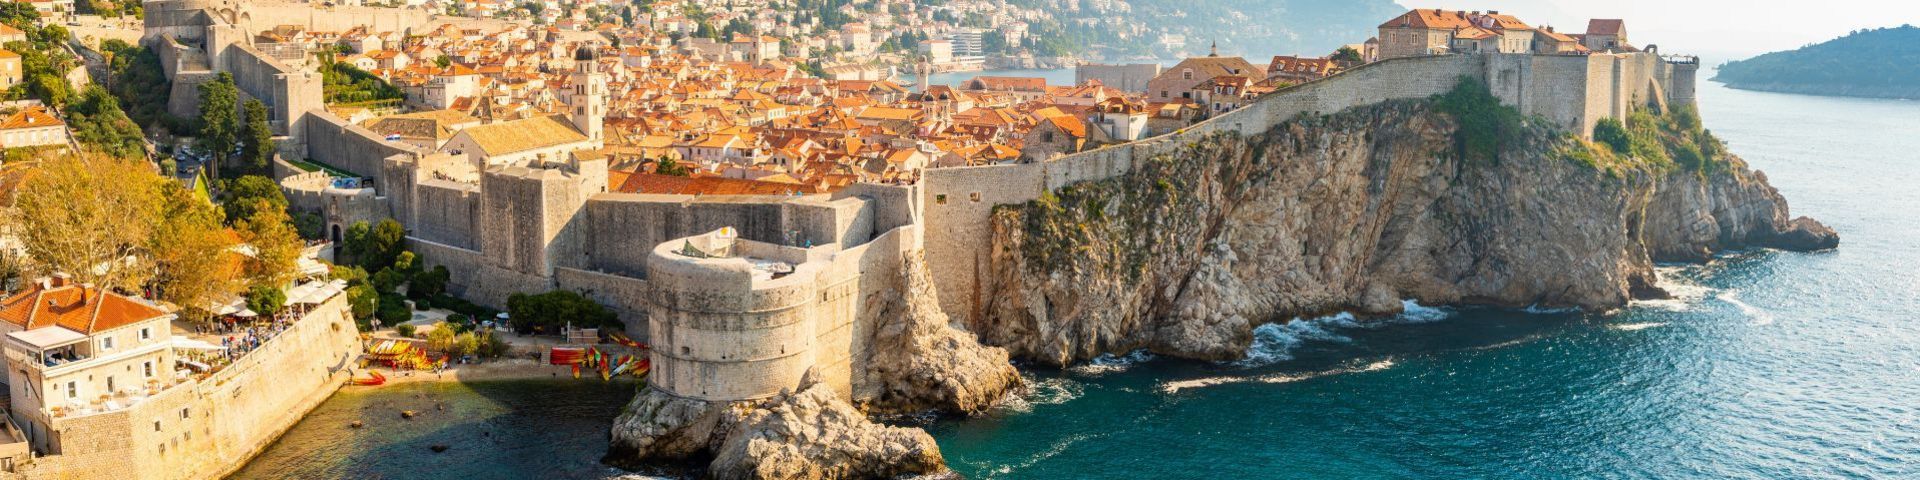 Dubrovnik Altstadt auf einer Kroatien Reise mit sz-Reisen